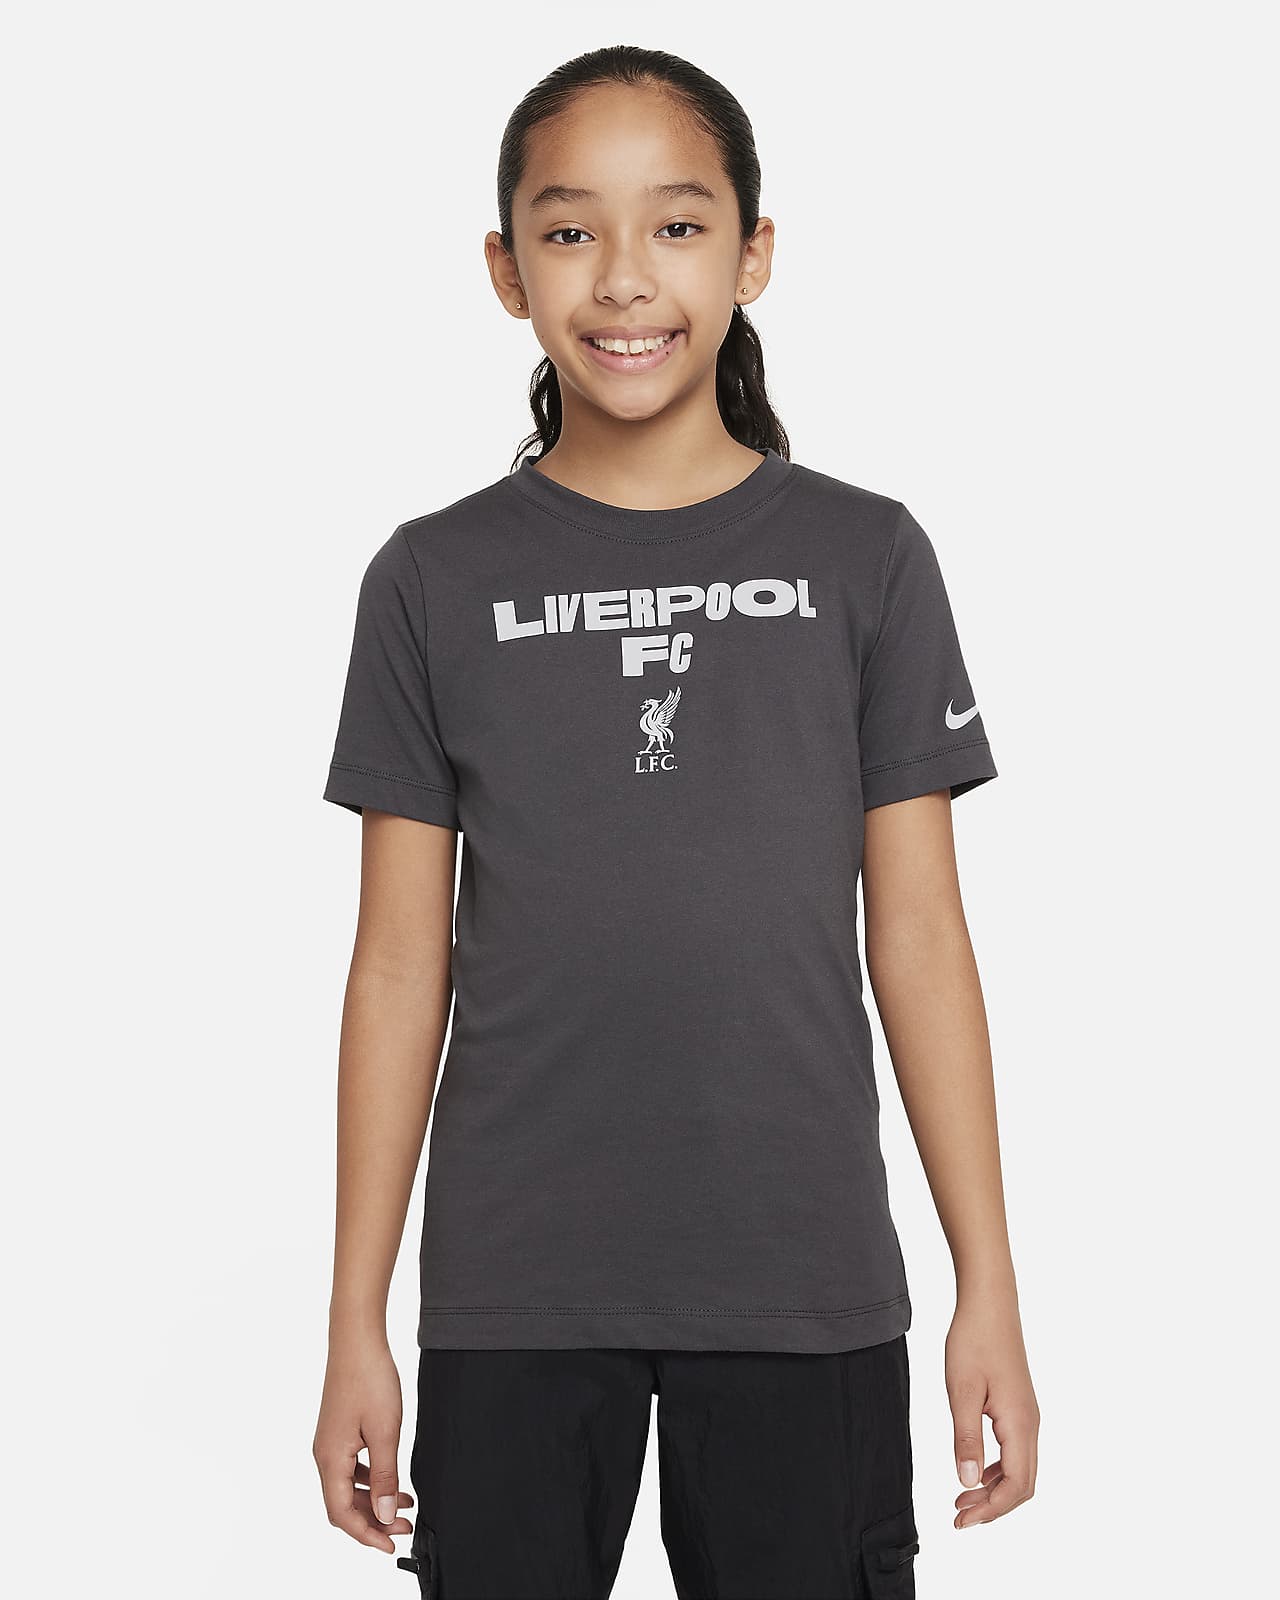 T-shirt piłkarski dla dużych dzieci Nike Liverpool F.C.